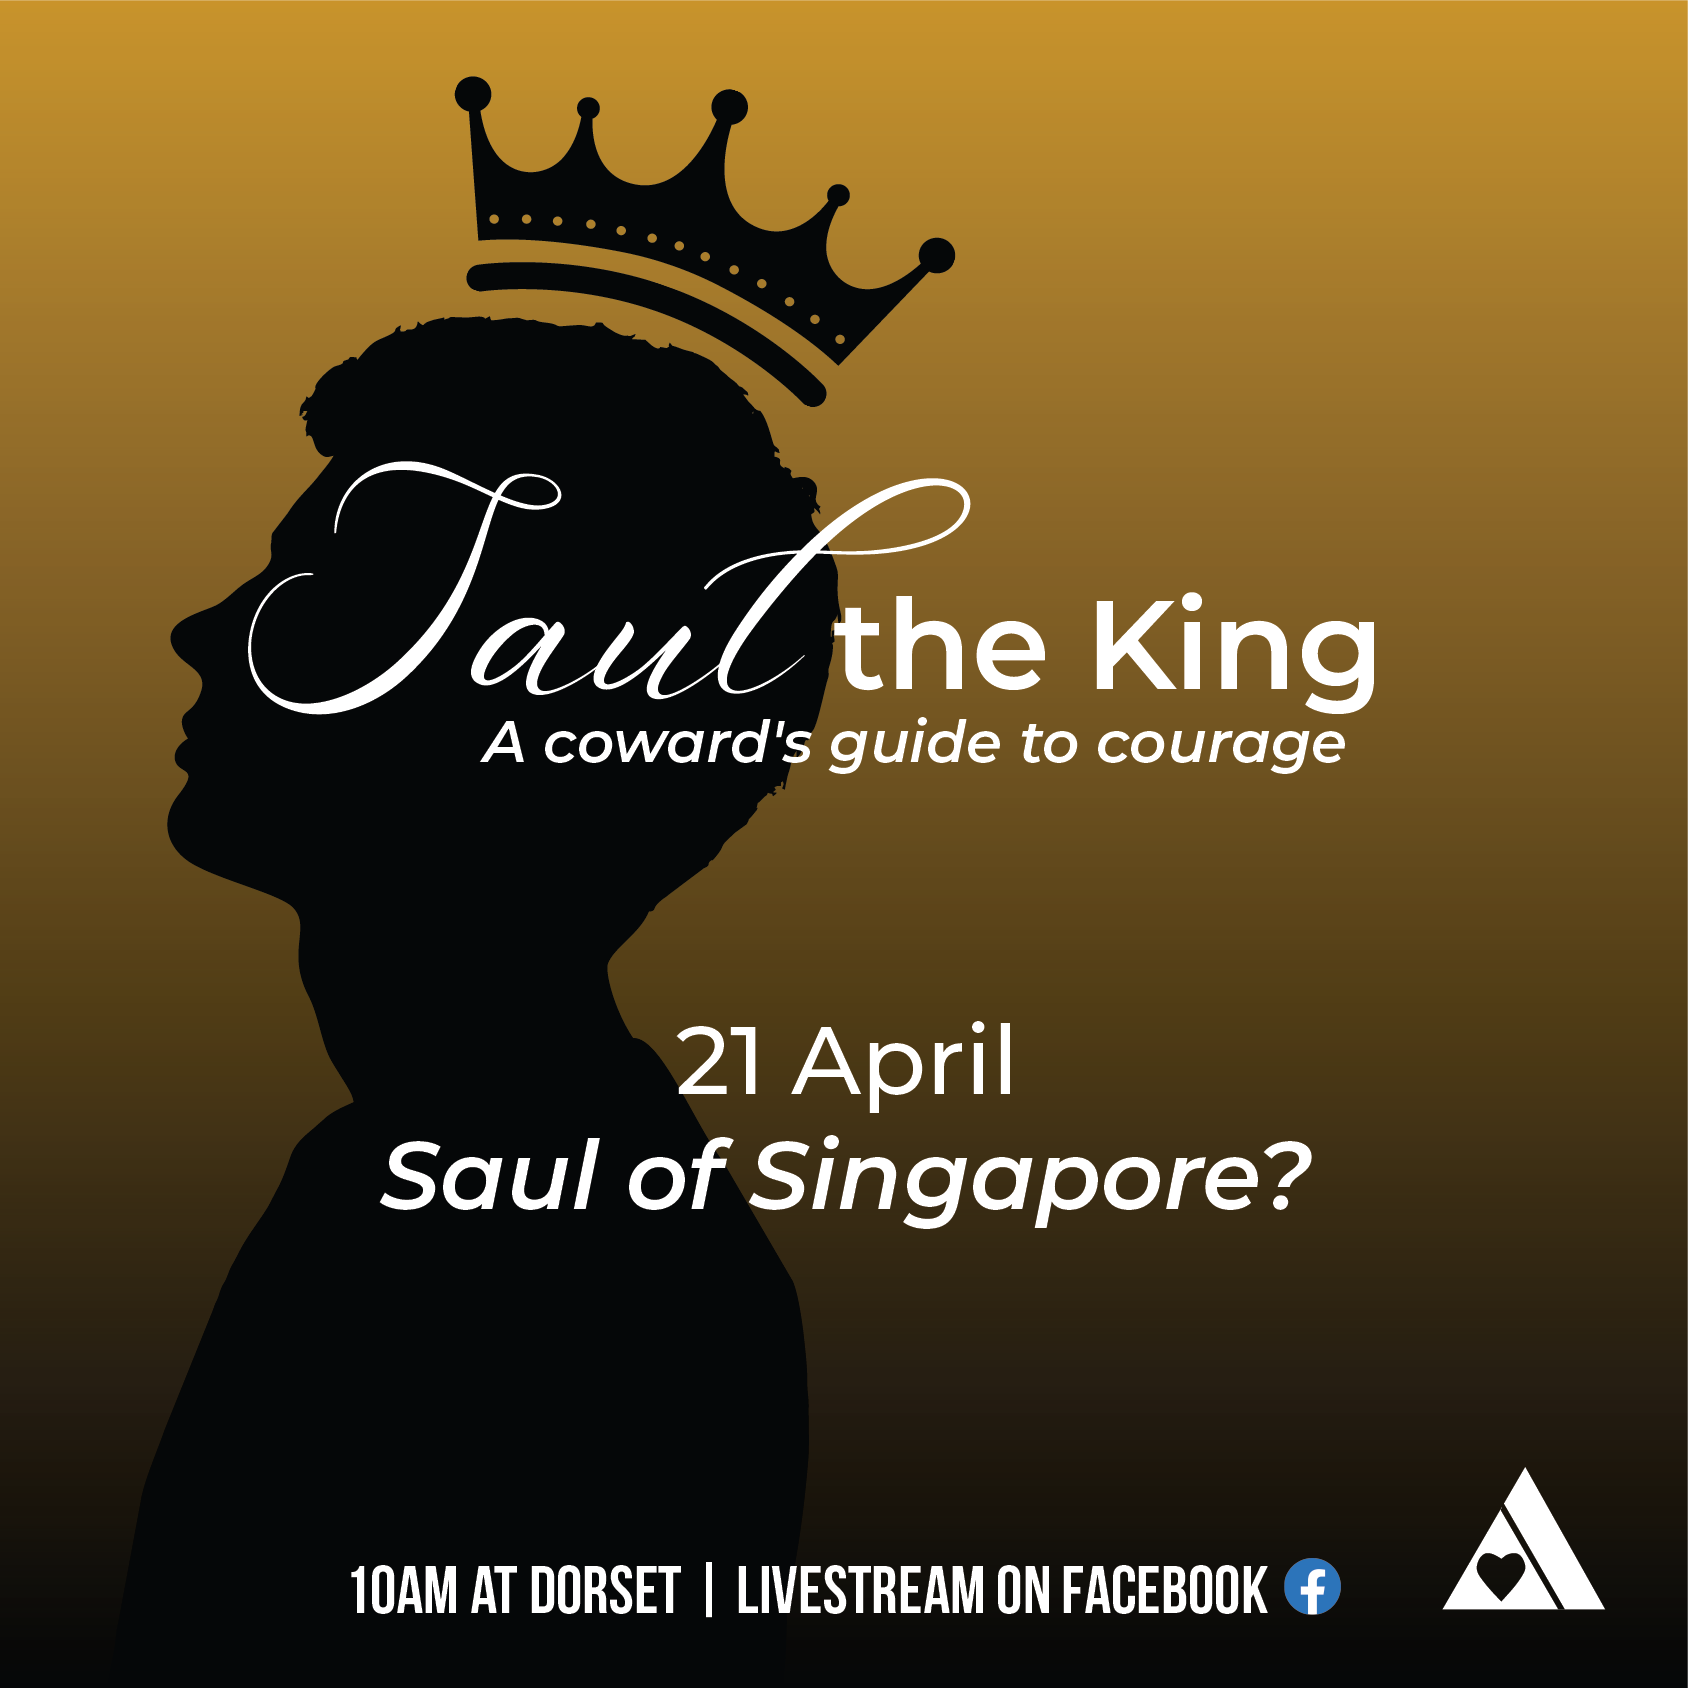 Saul of Singapore?